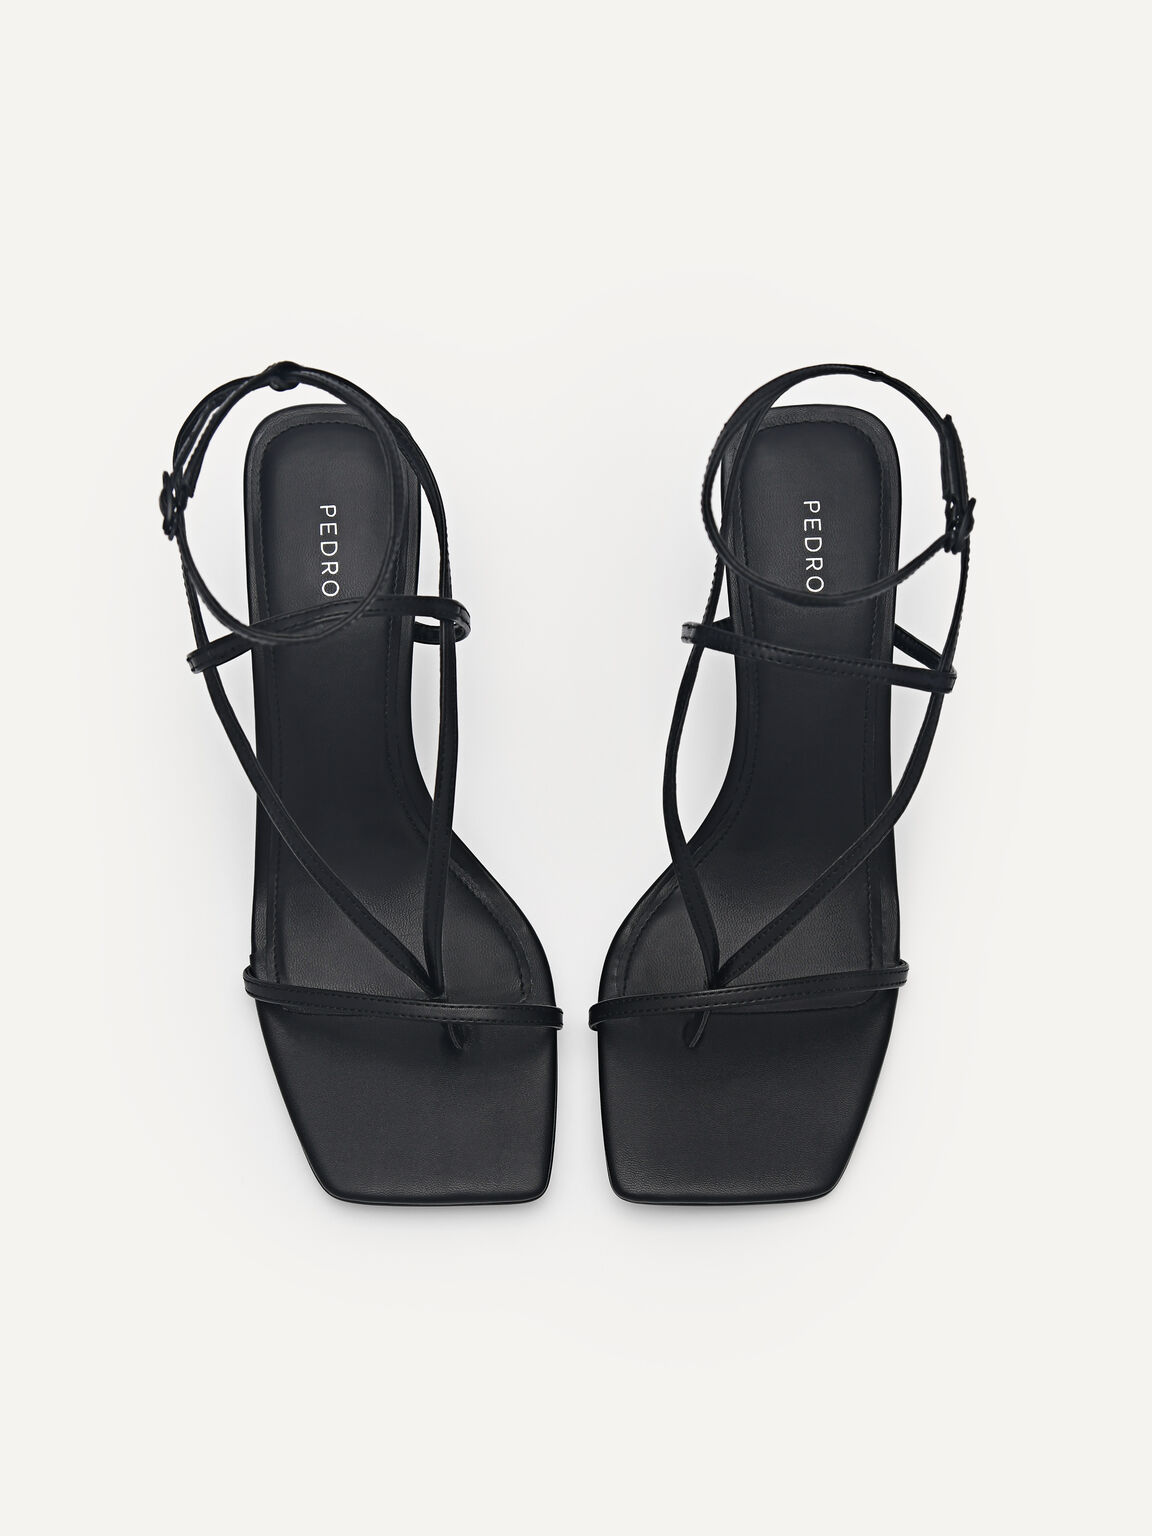 Jatte Heel Sandals, Black, hi-res